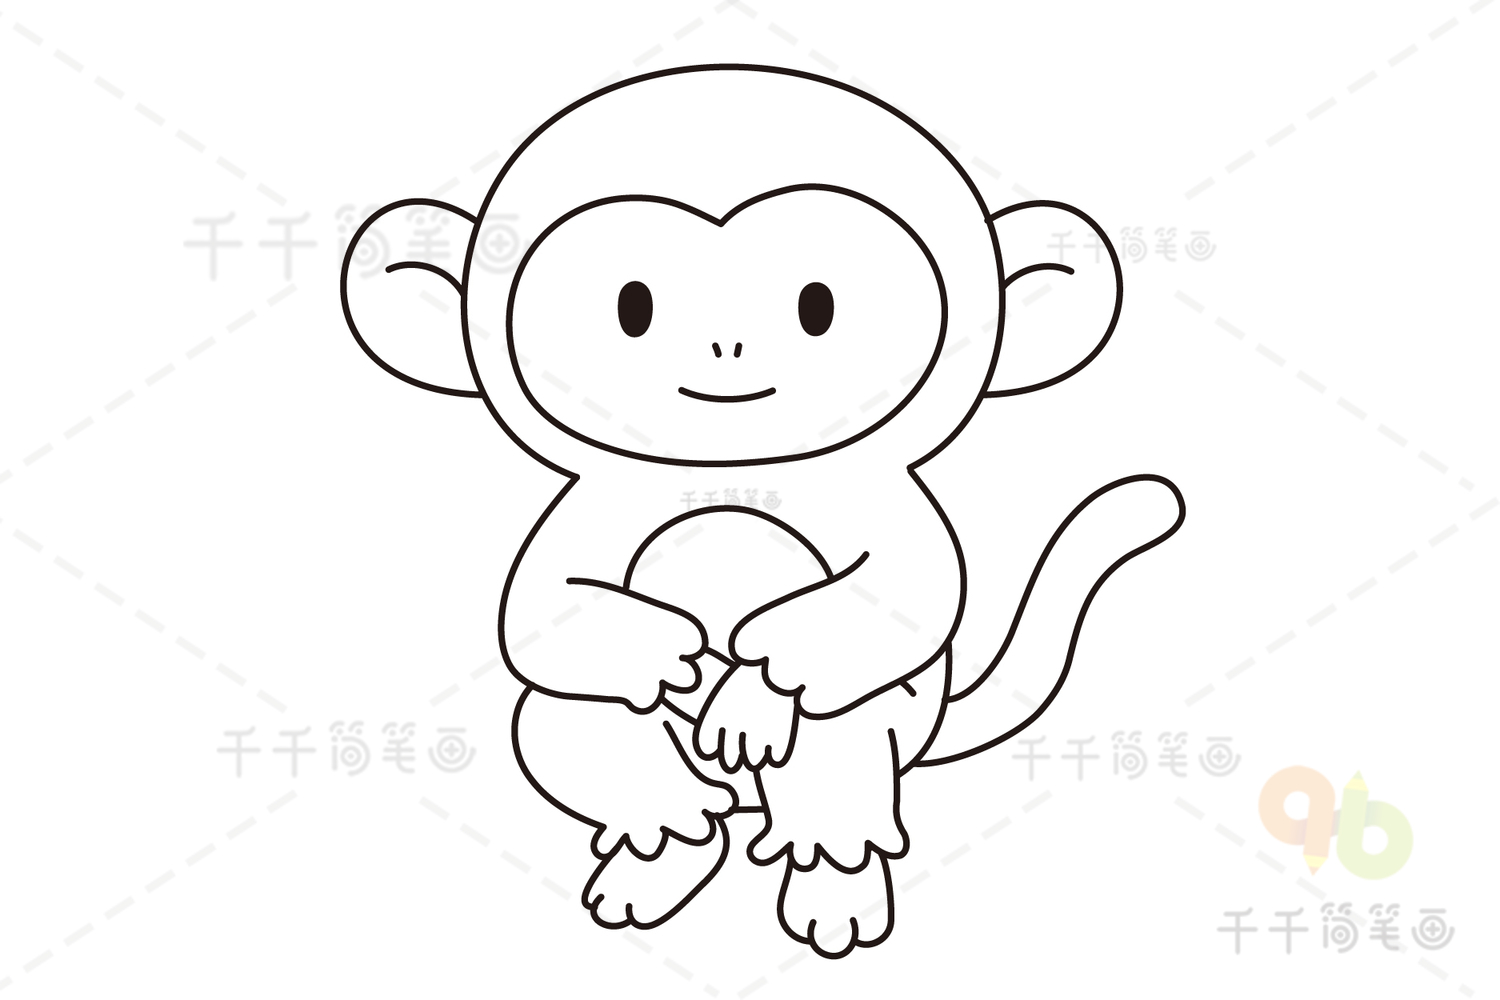 有趣的小猴子：购物狂小猴子去超市买玩具，主人会给它买单吗？-小猴子儿童乐园-小猴子儿童乐园-哔哩哔哩视频